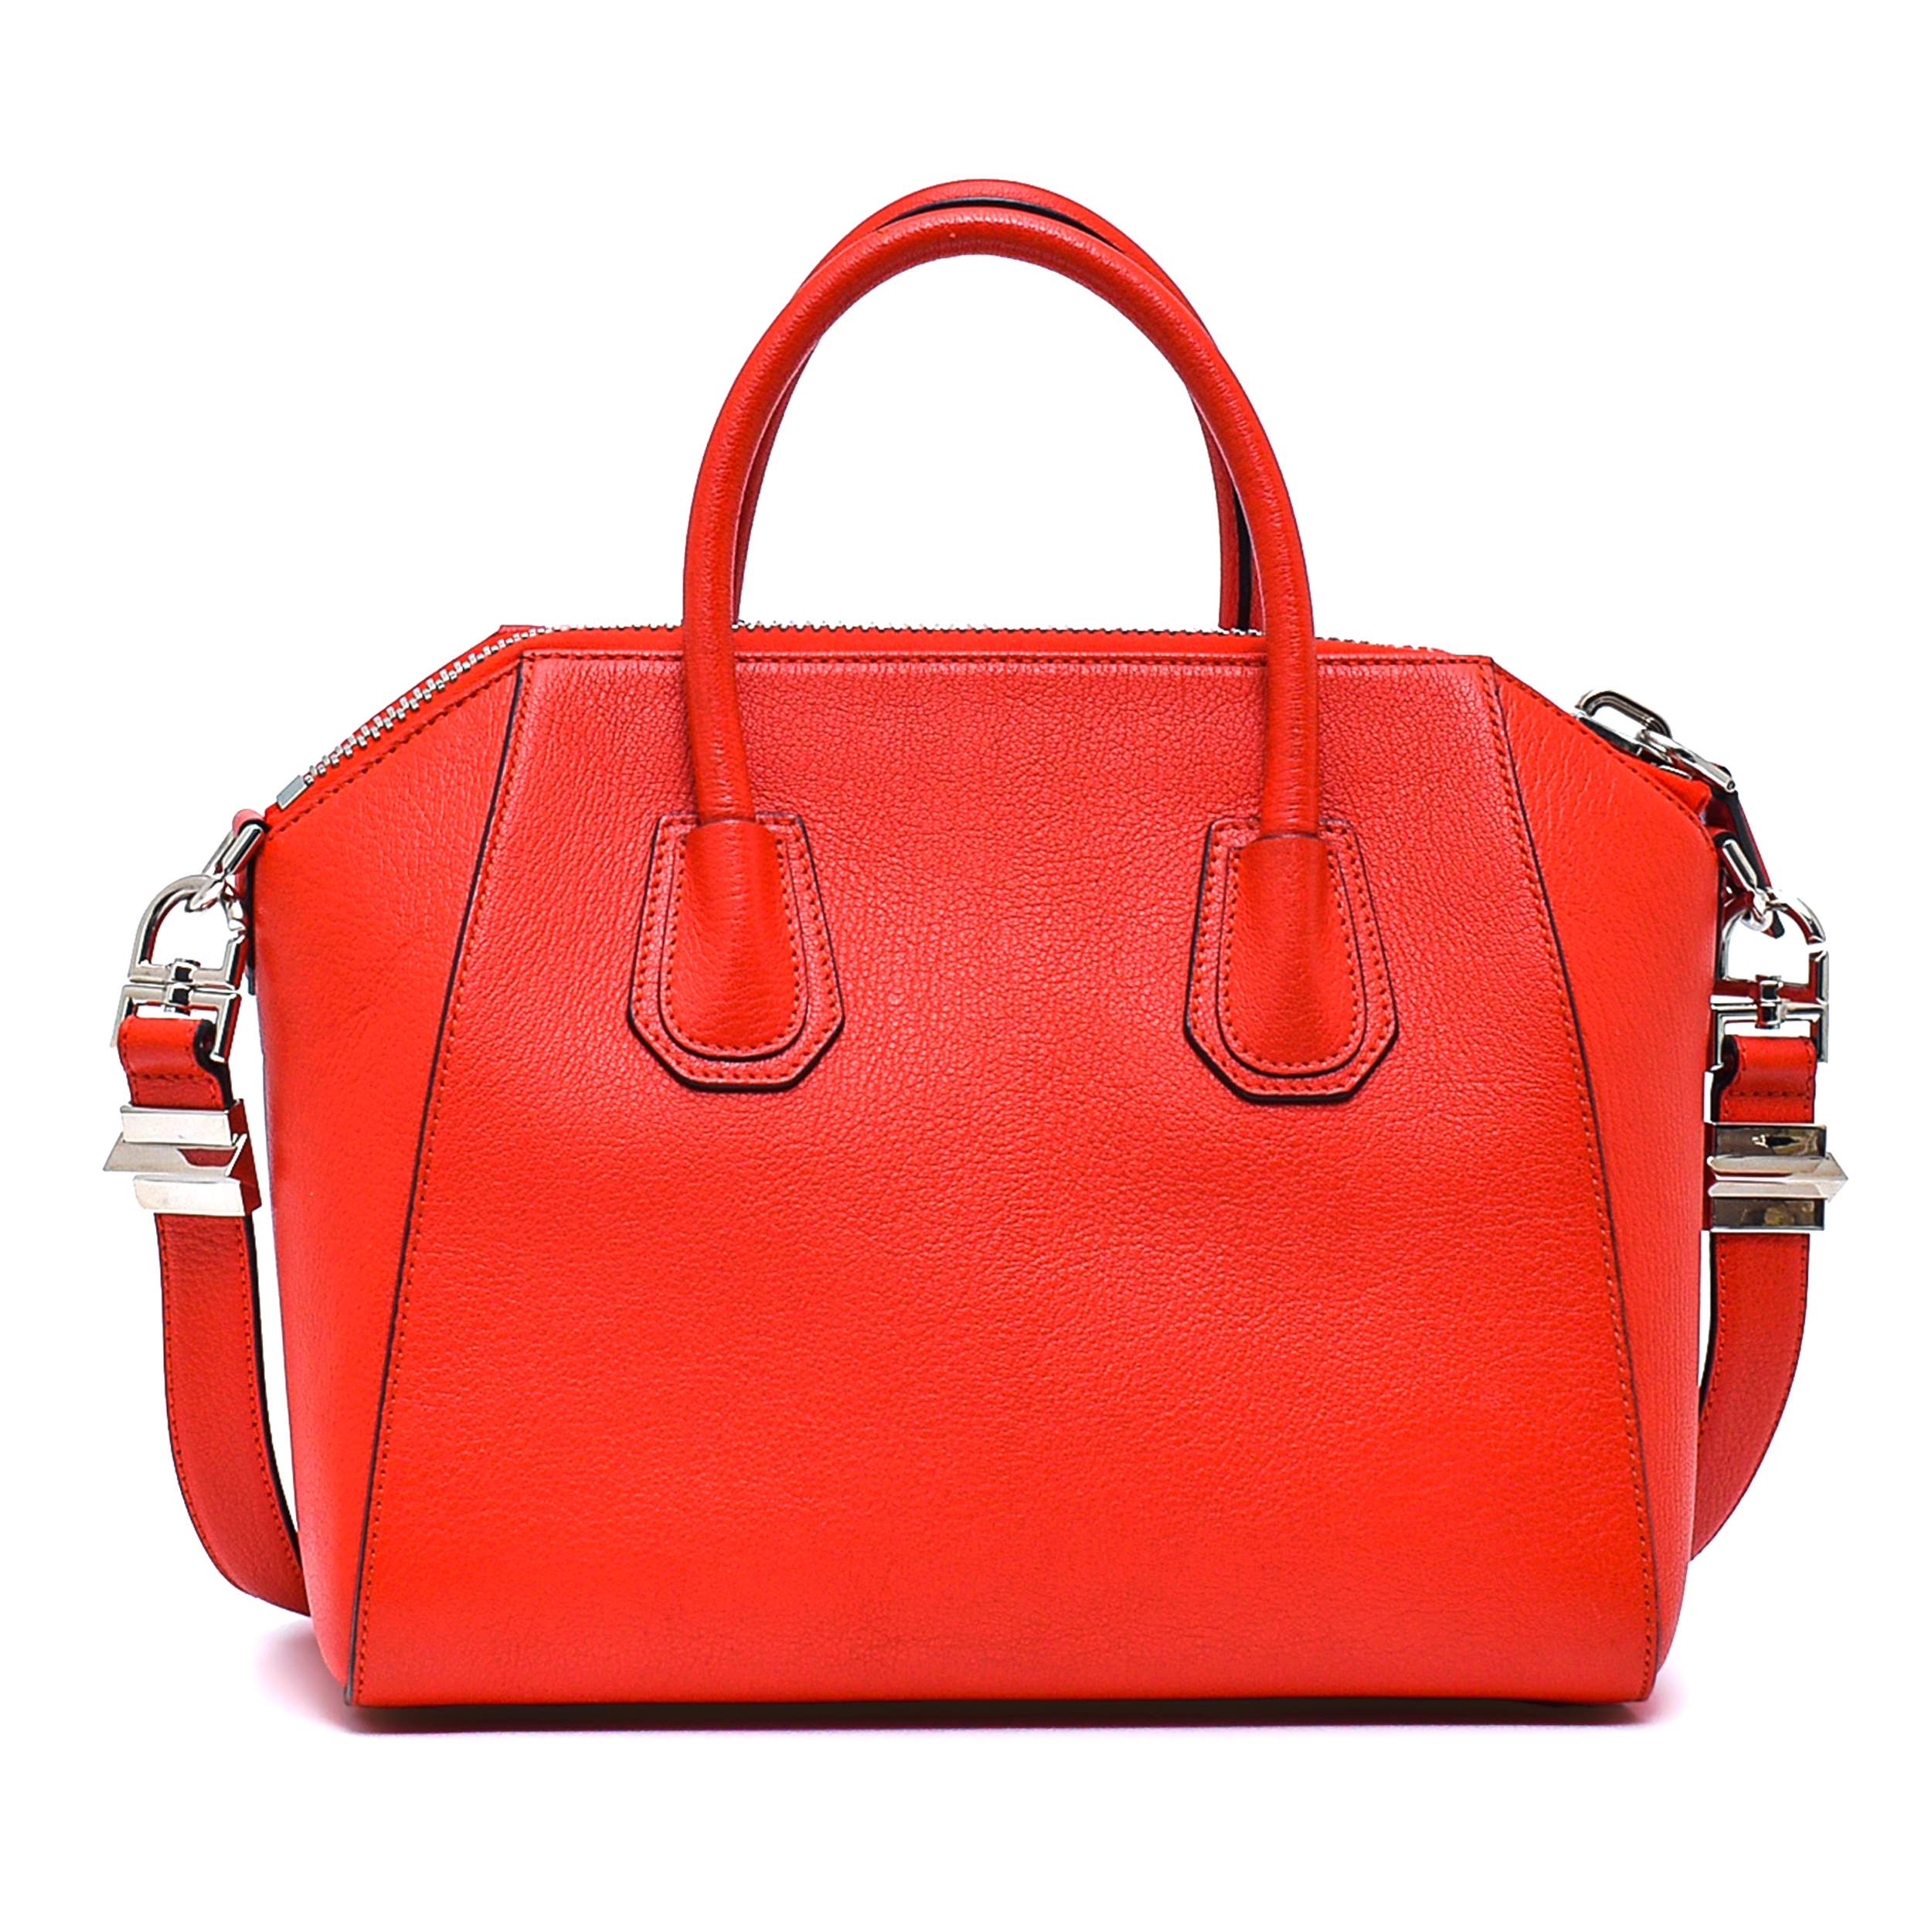 Givenchy - Red Leather Small Antigona Bag